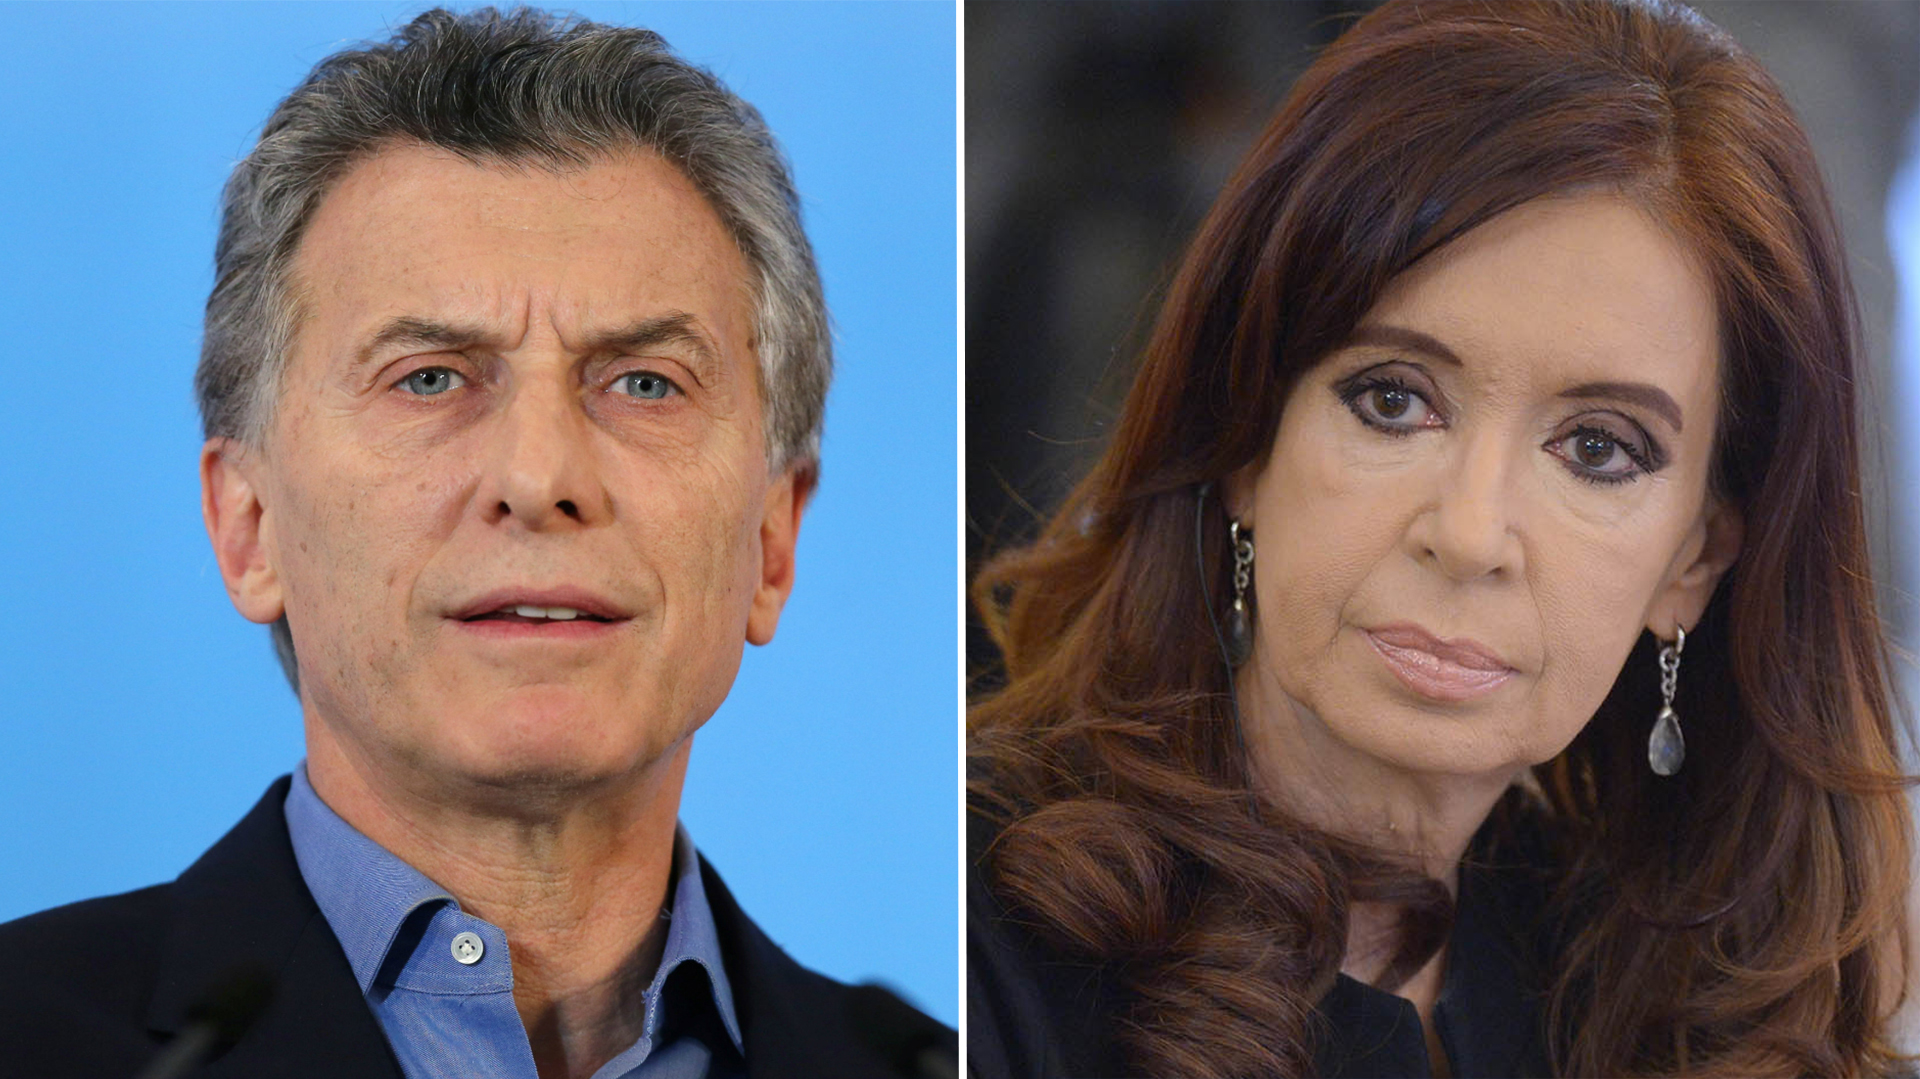 Mauricio Macri y Cristina Kirchner, los protagonistas de la grieta política que divide a los argentinos